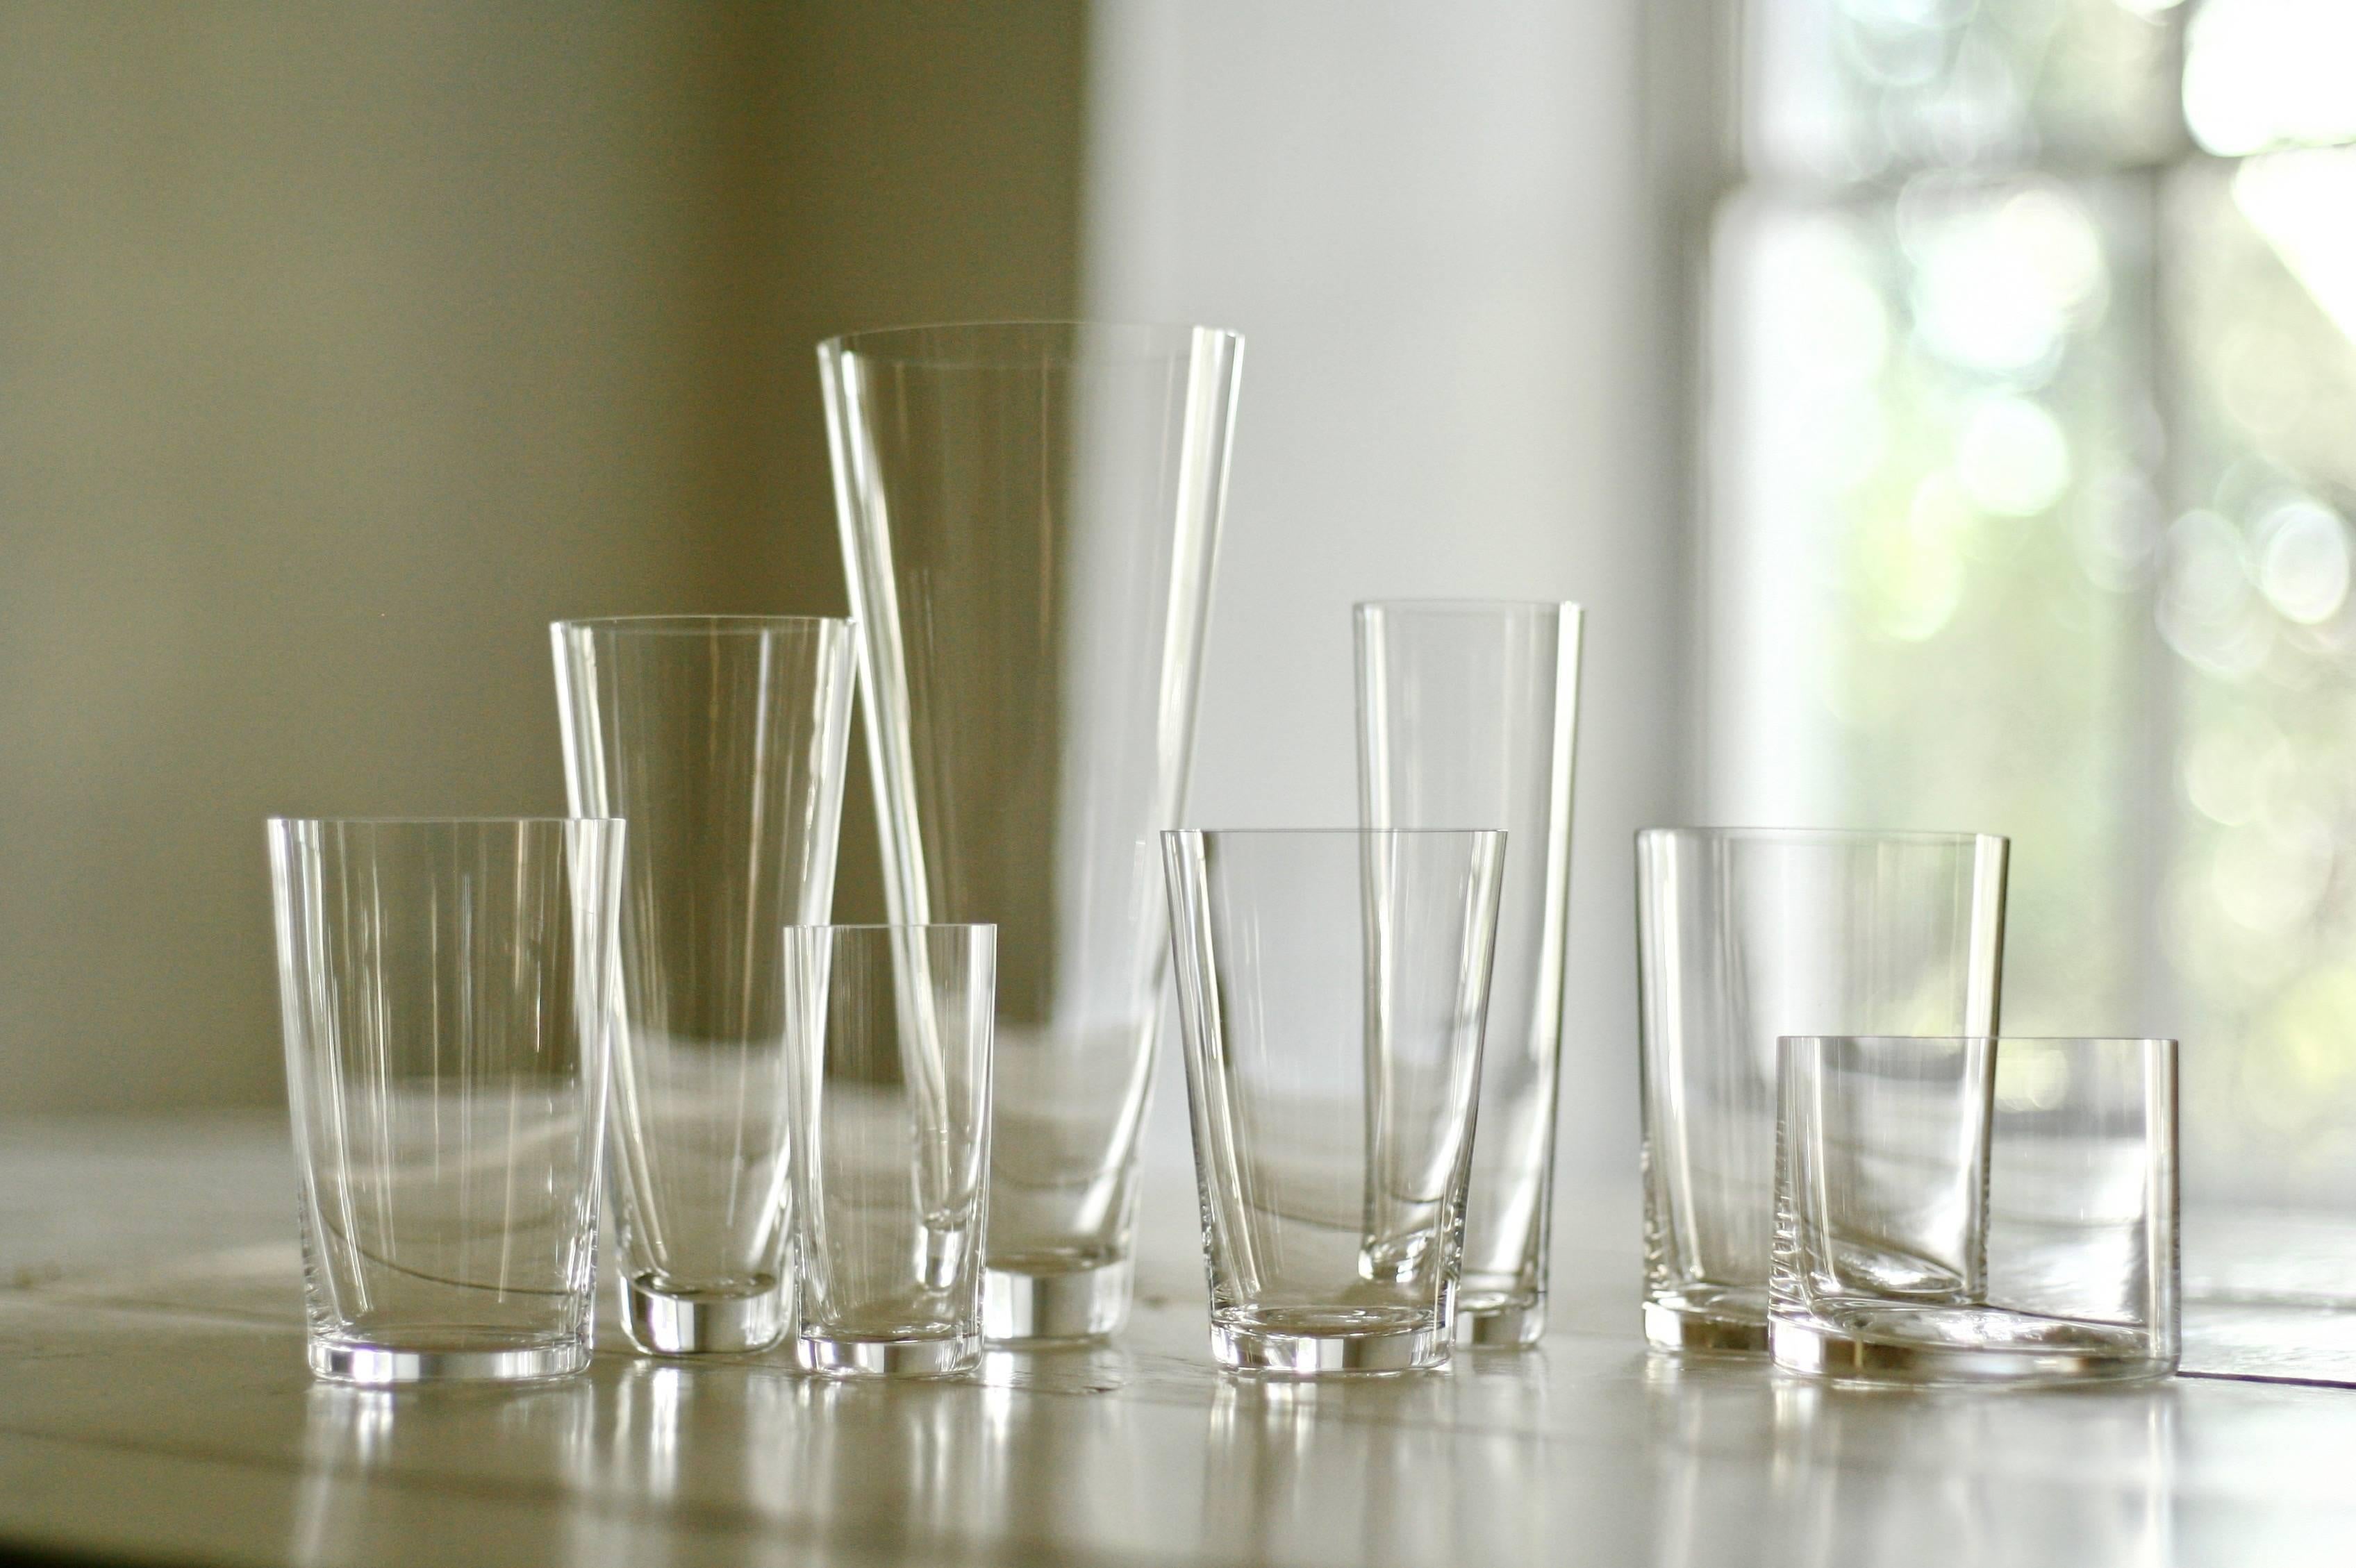 Lancés avec Takashimaya en 1999, ces verres à cocktail en cristal soufflé à la bouche sont devenus un classique moderne. Chaque pièce de Deborah Ehrlich est conçue pour l'extraordinaire force et clarté du cristal suédois. La simplicité du design, la